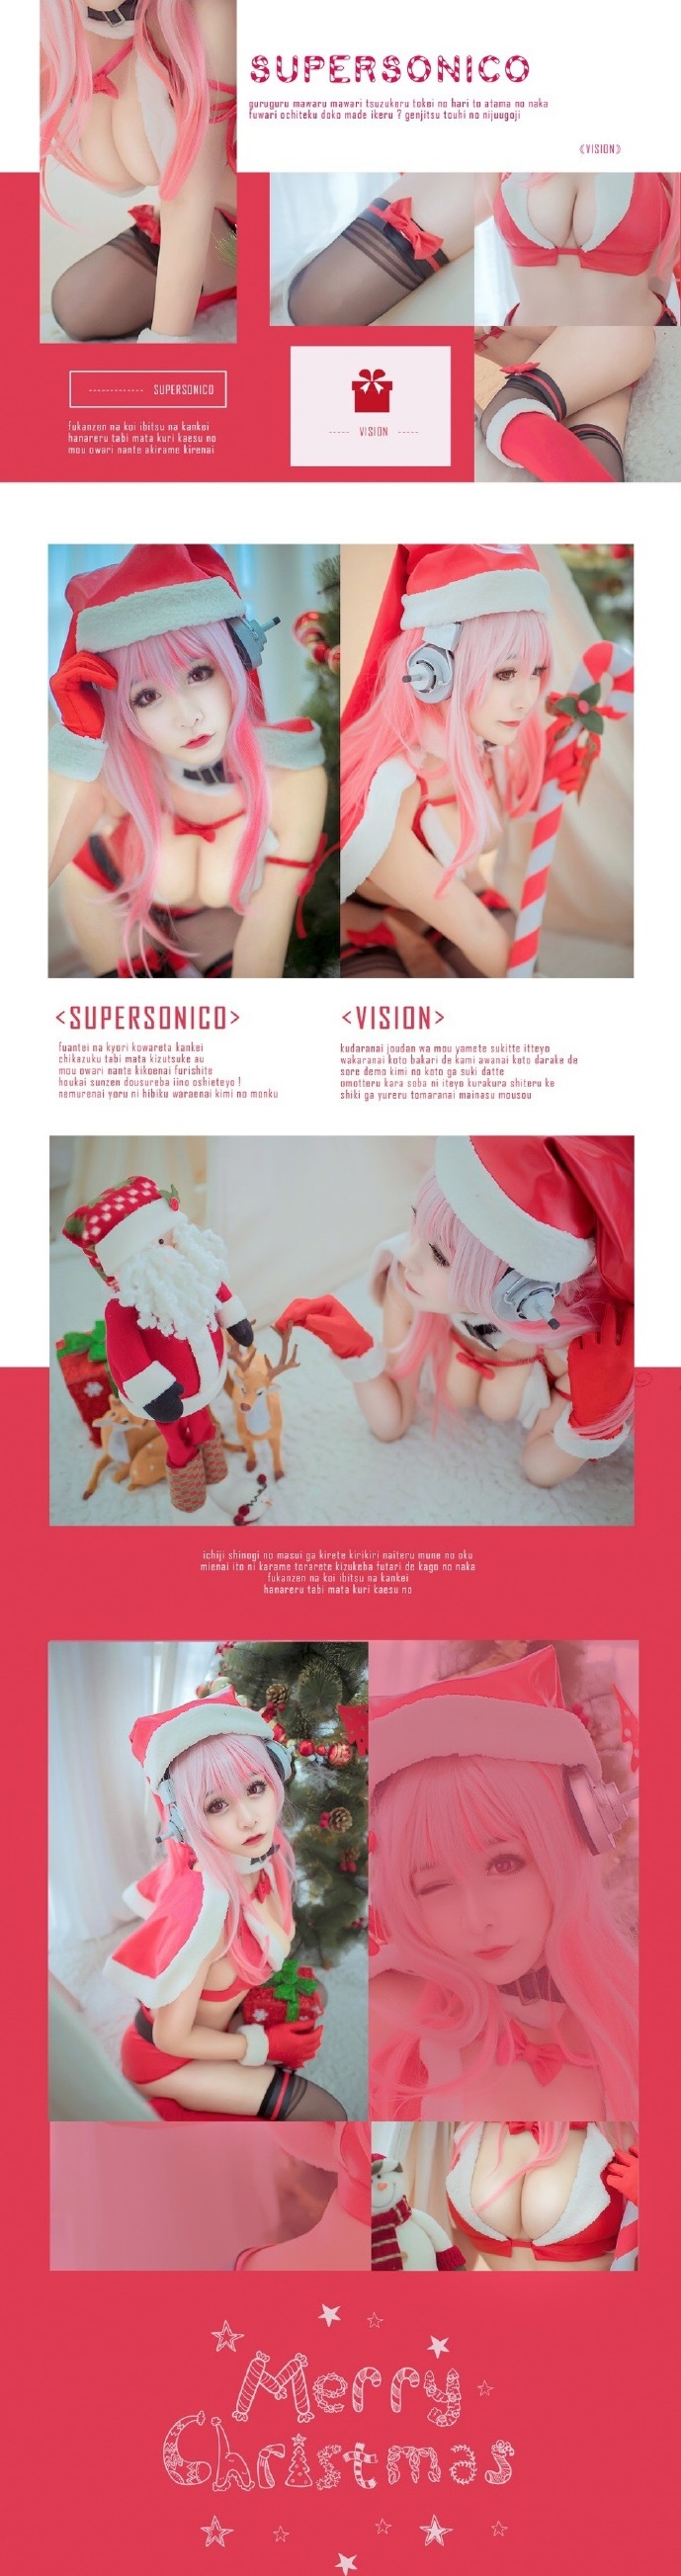 Mừng Noel với cosplay Super Sonico quyến rũ đầy nóng bỏng